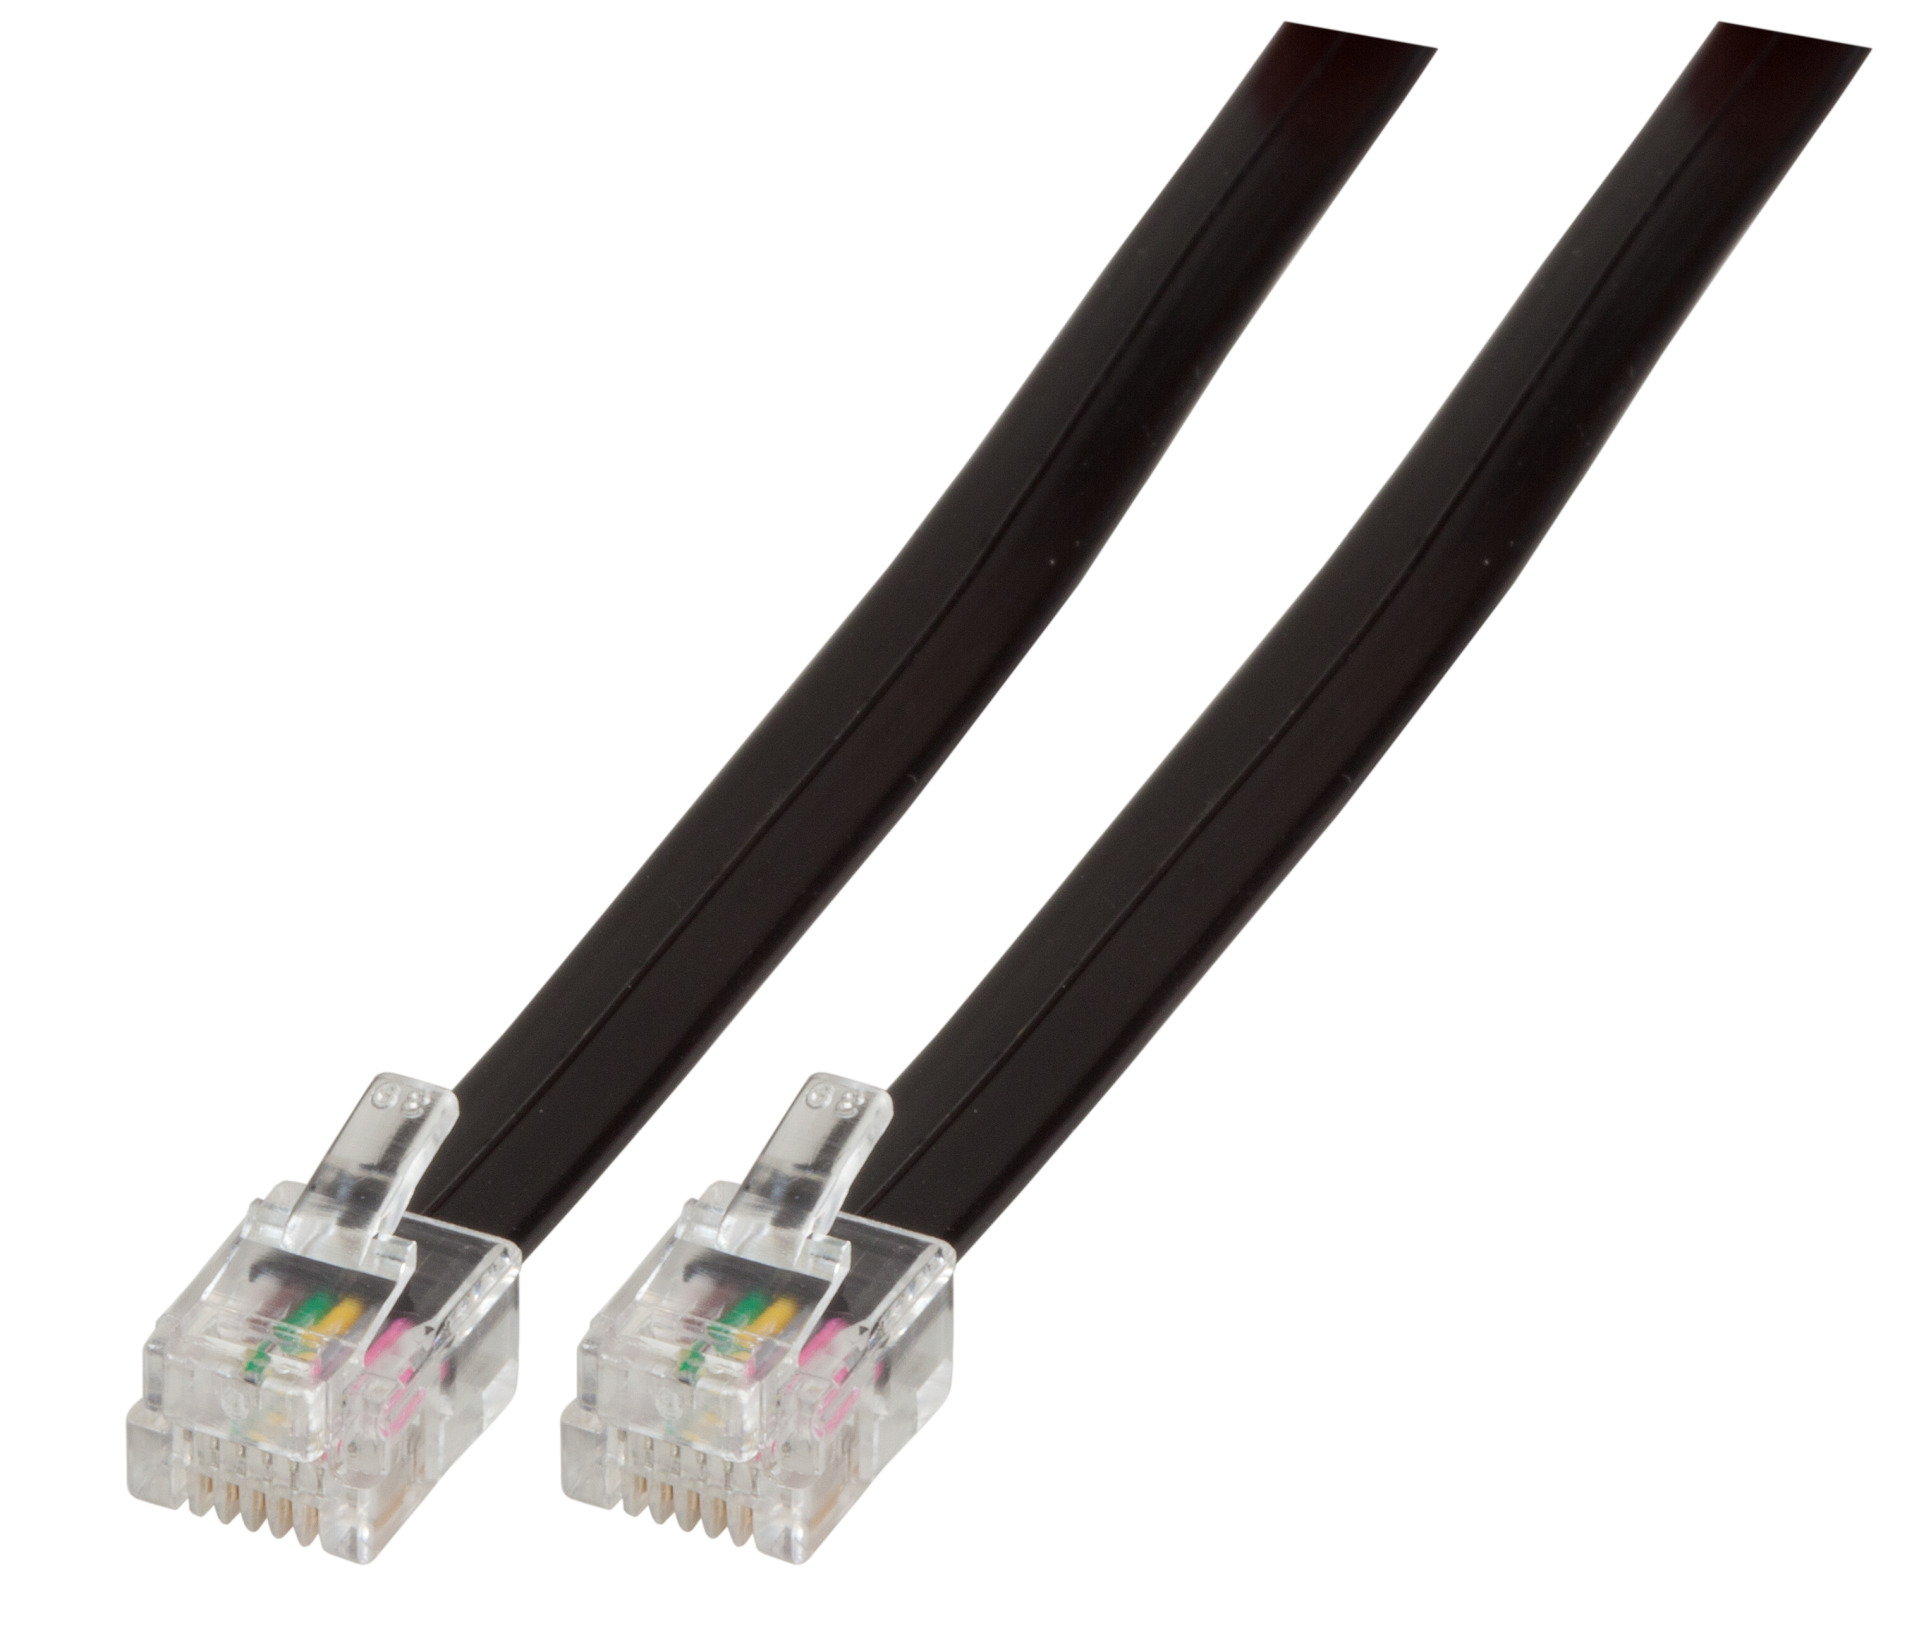 Modular Cable RJ12 (6/6) / RJ12 (6/6), 1:1, Black, 1 m